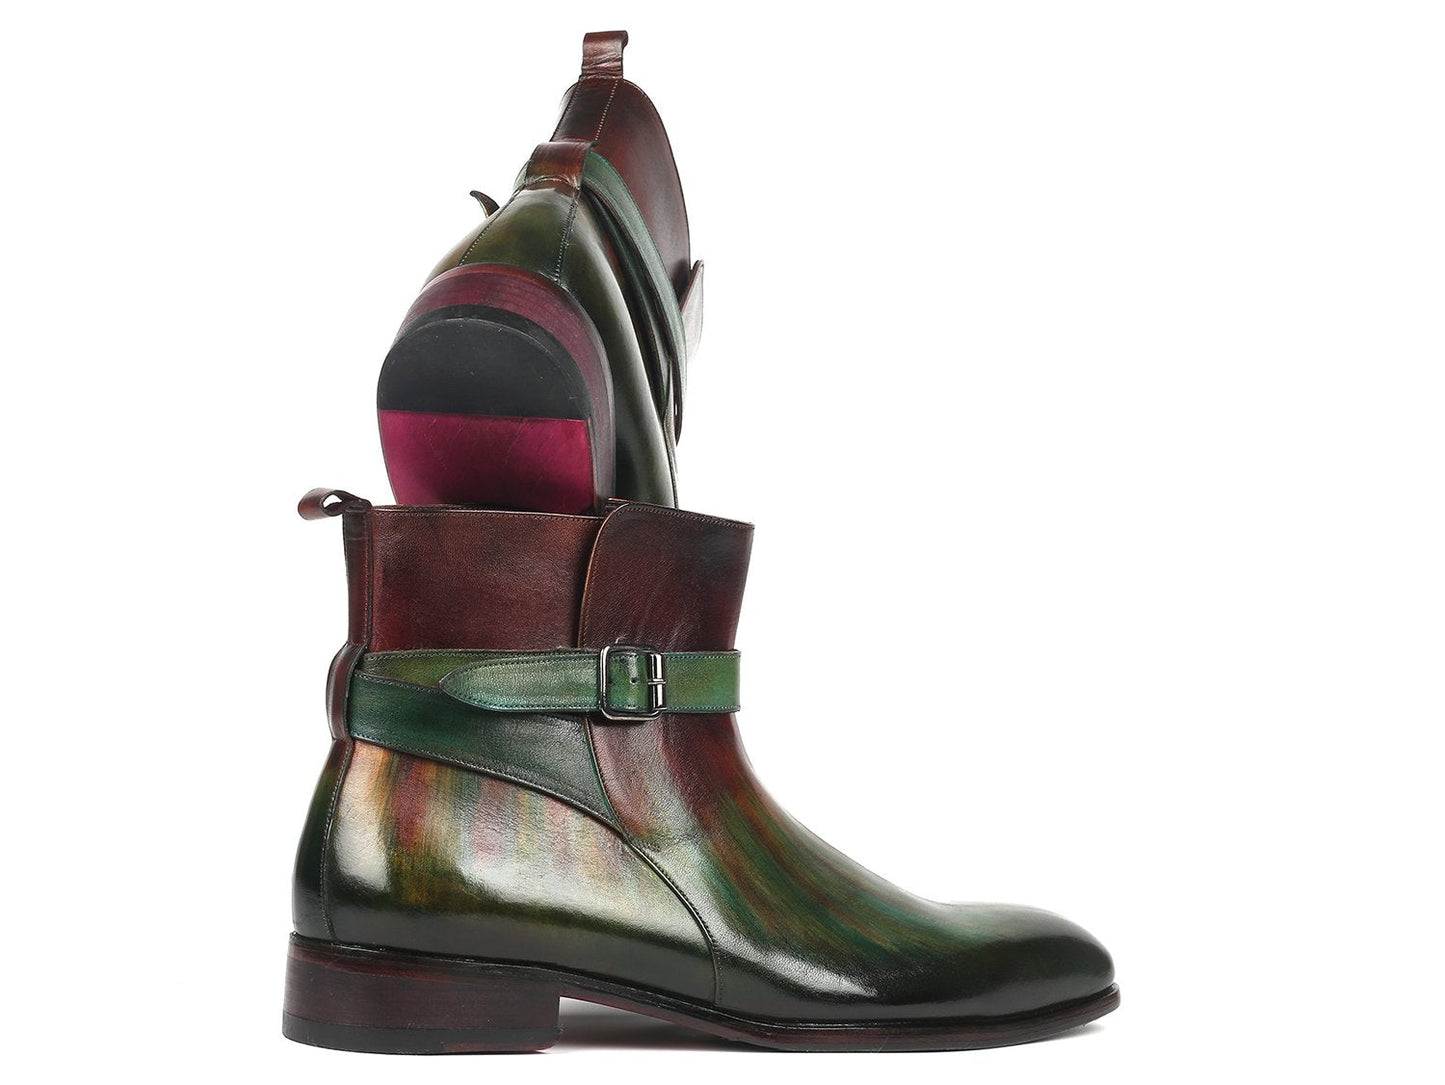 Paul Parkman Men's Jodhpur Boots Green & Bordeaux (957FRS84)